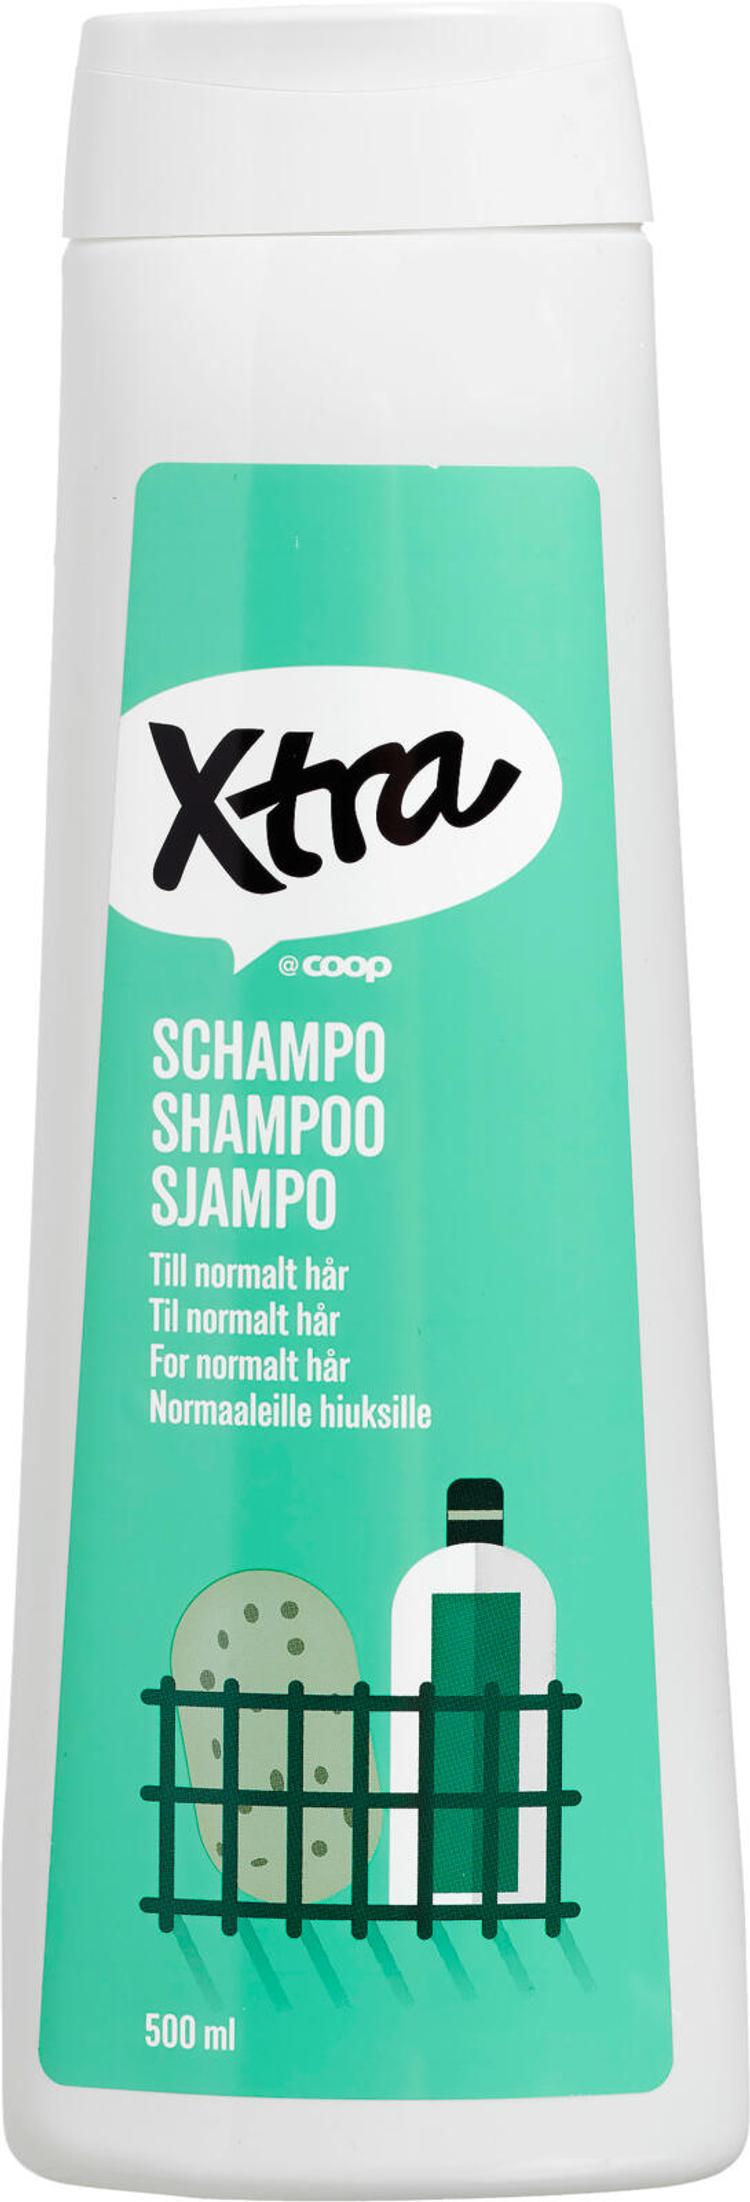 Xtra shampoo 500 ml